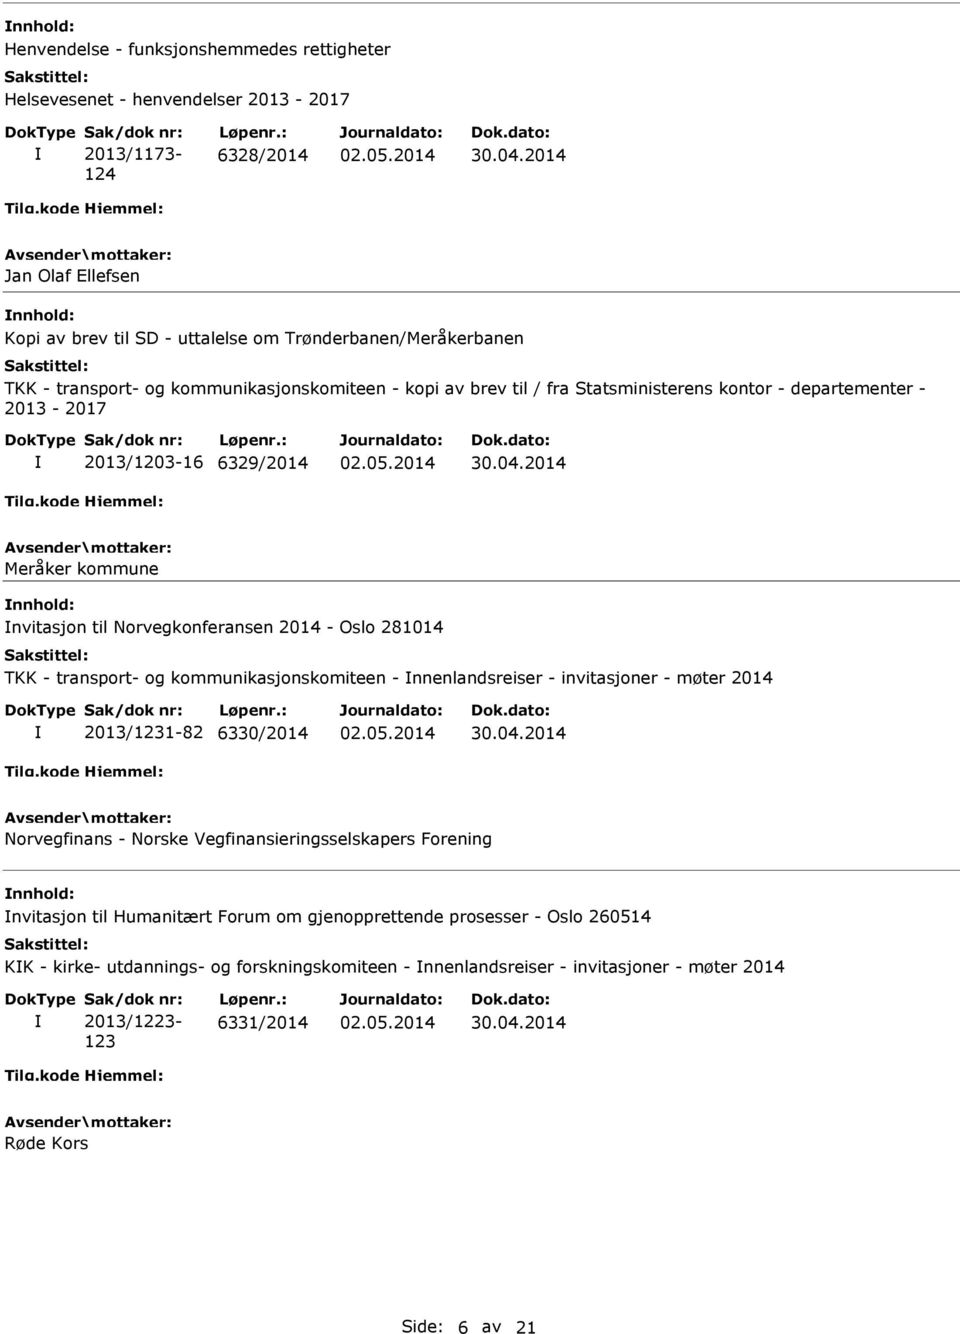 Oslo 281014 TKK - transport- og kommunikasjonskomiteen - nnenlandsreiser - invitasjoner - møter 2014 2013/1231-82 6330/2014 Norvegfinans - Norske Vegfinansieringsselskapers Forening nvitasjon